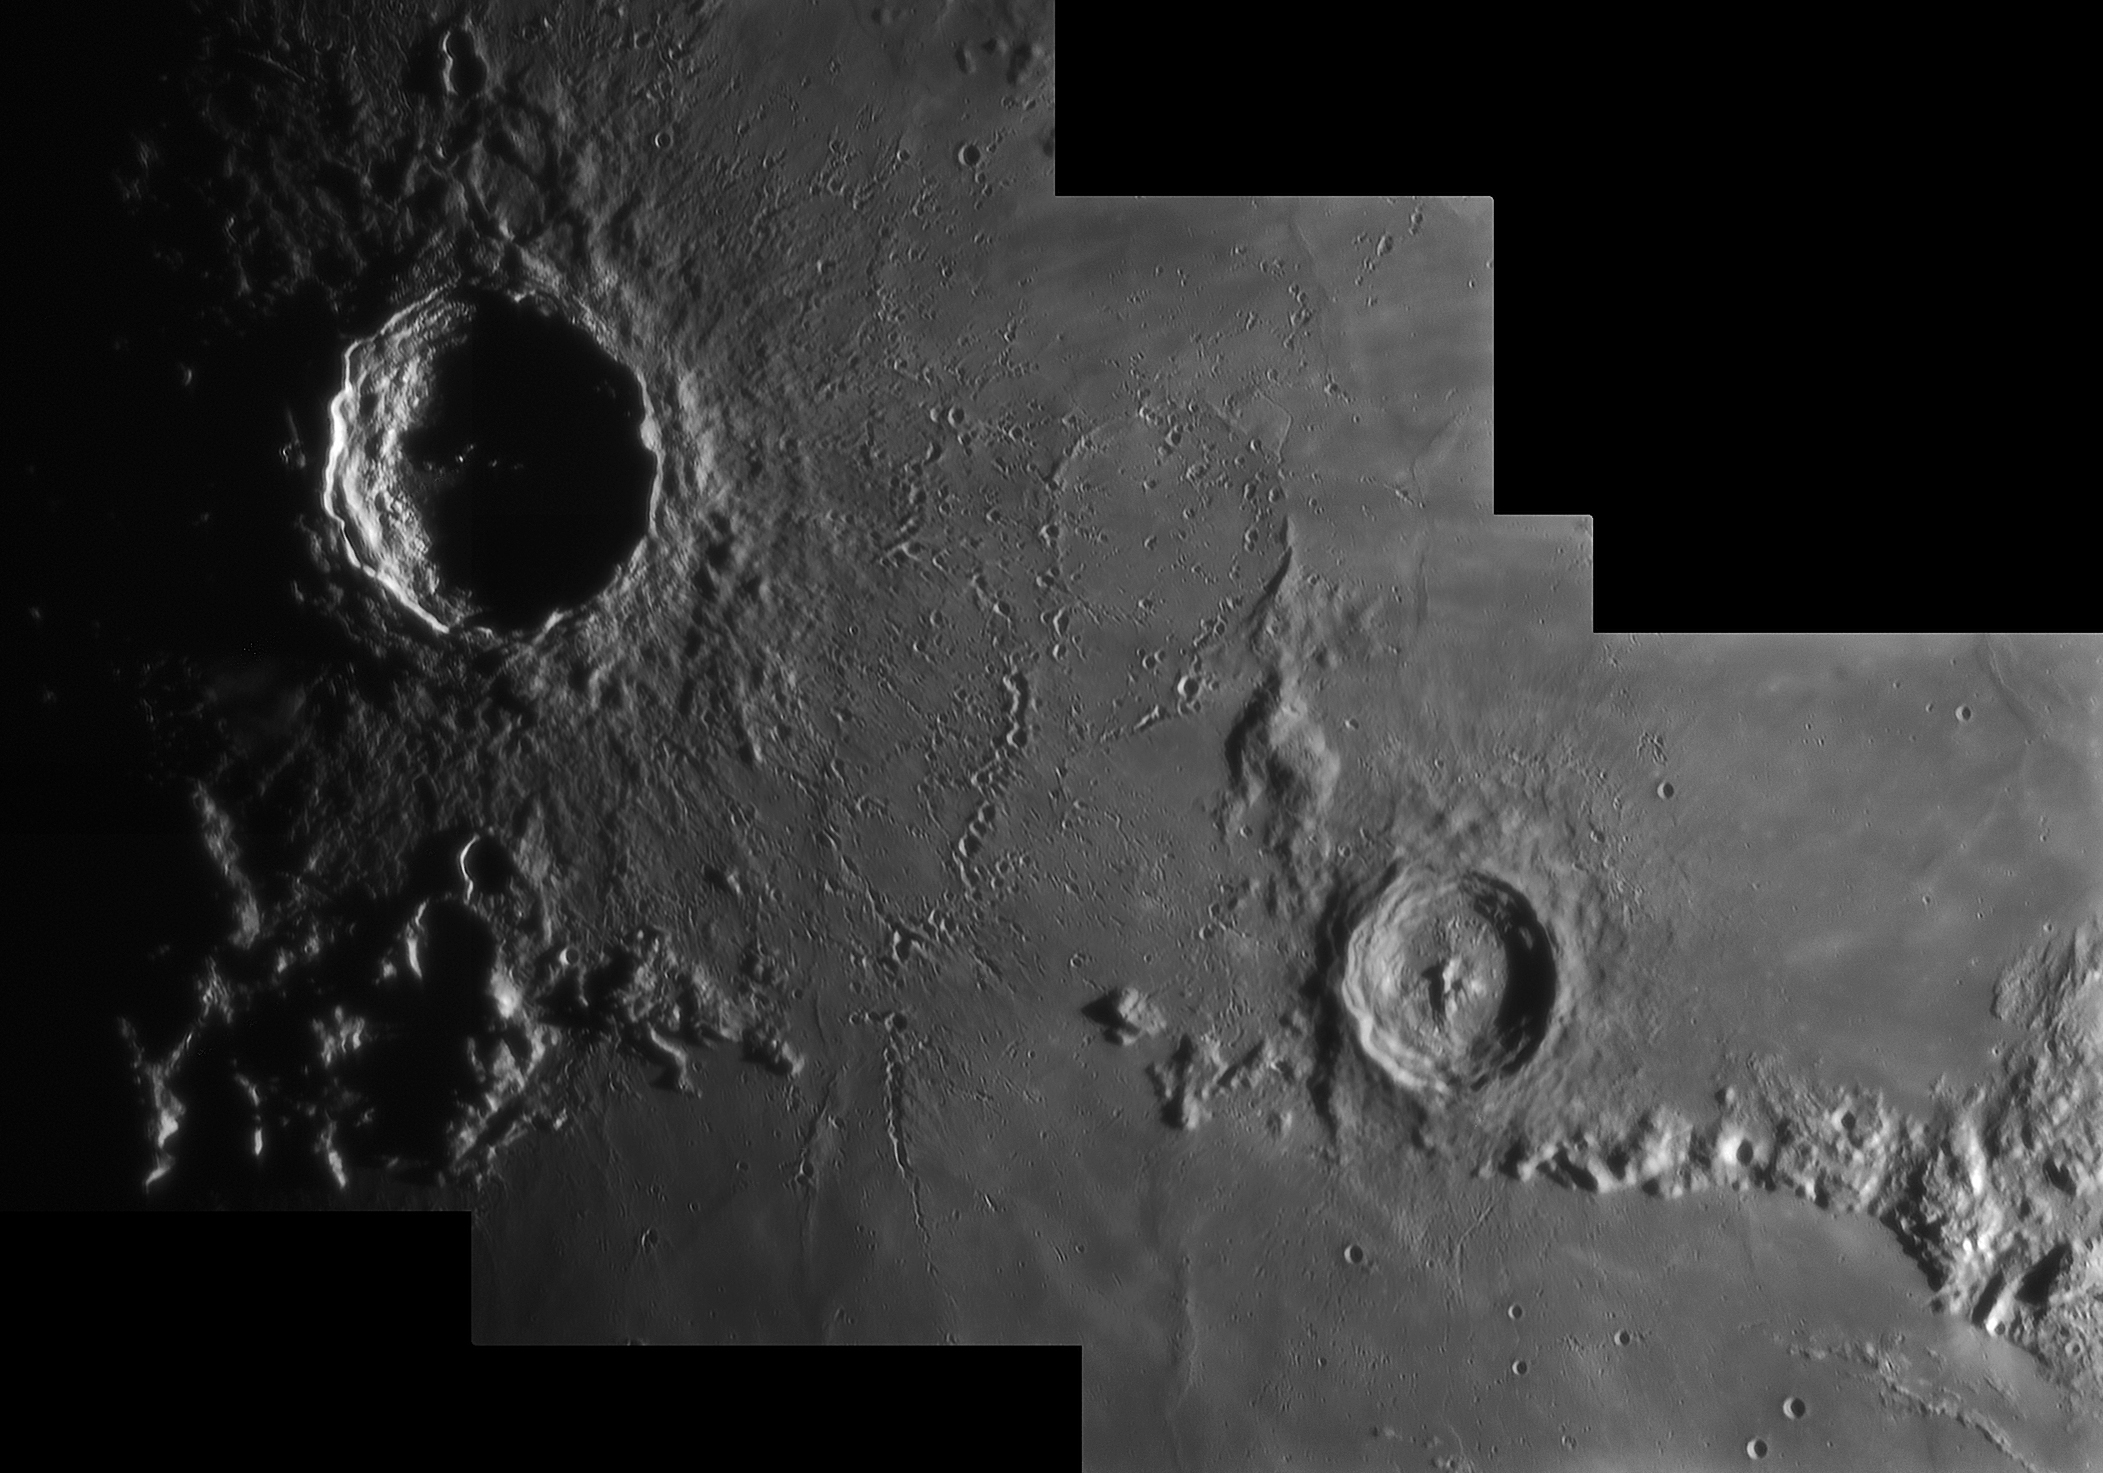 Copernicus-Stadius-Eratosthenes 22-05-10